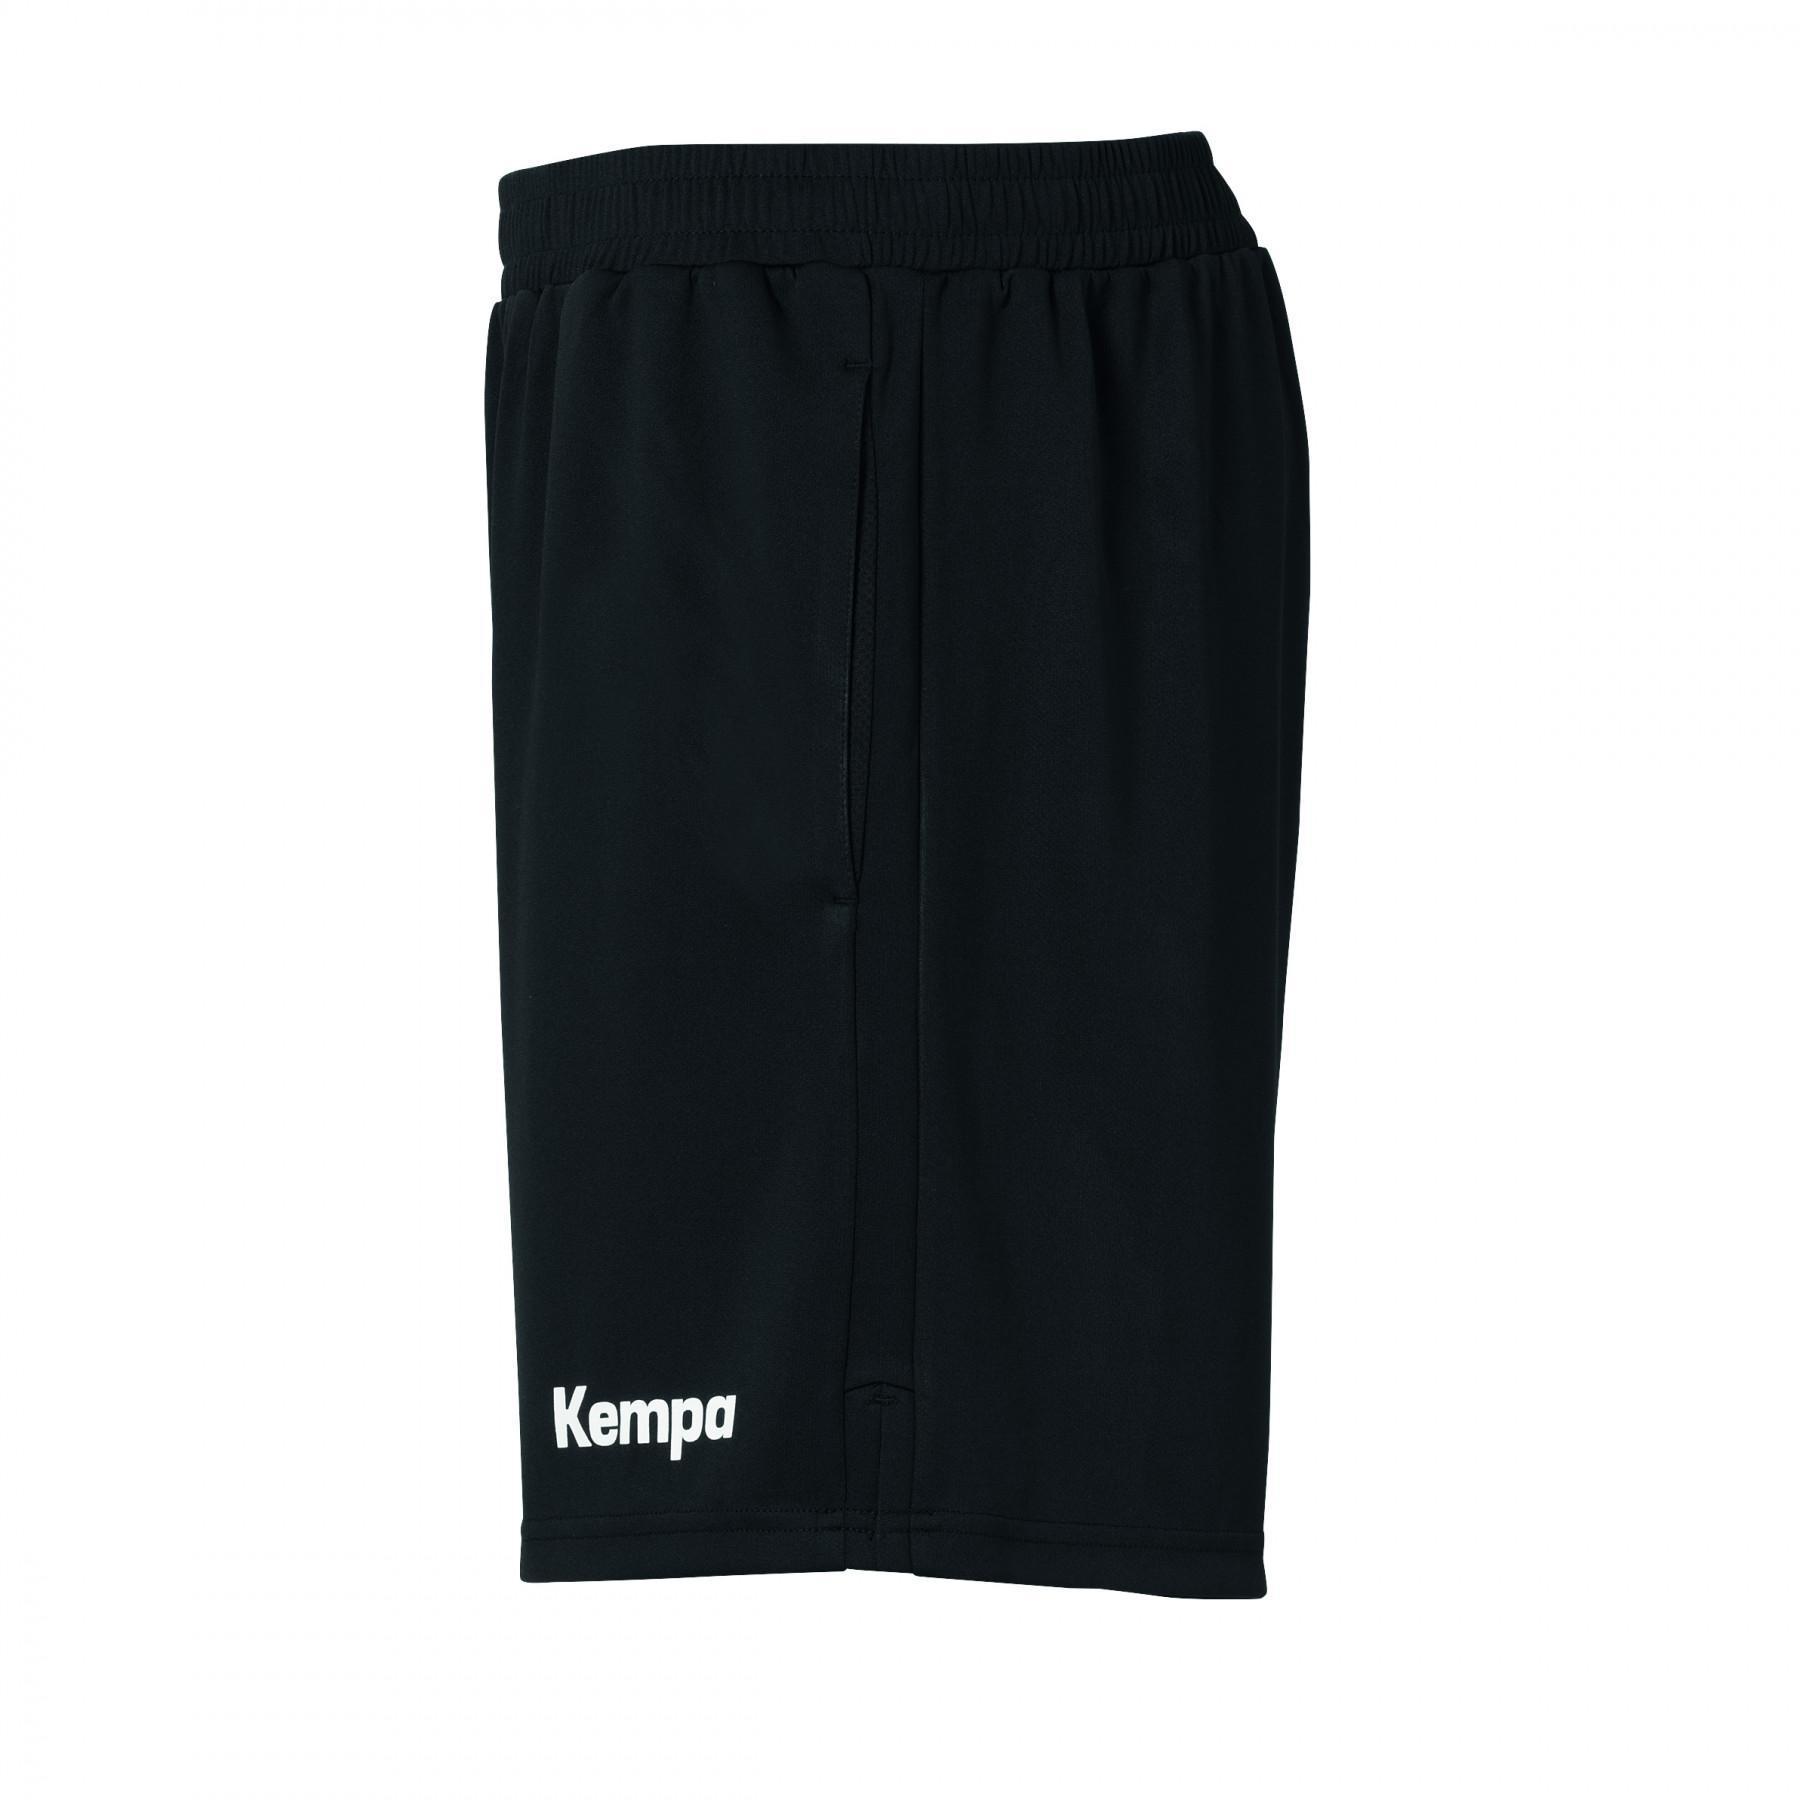 Short with pockets Kempa